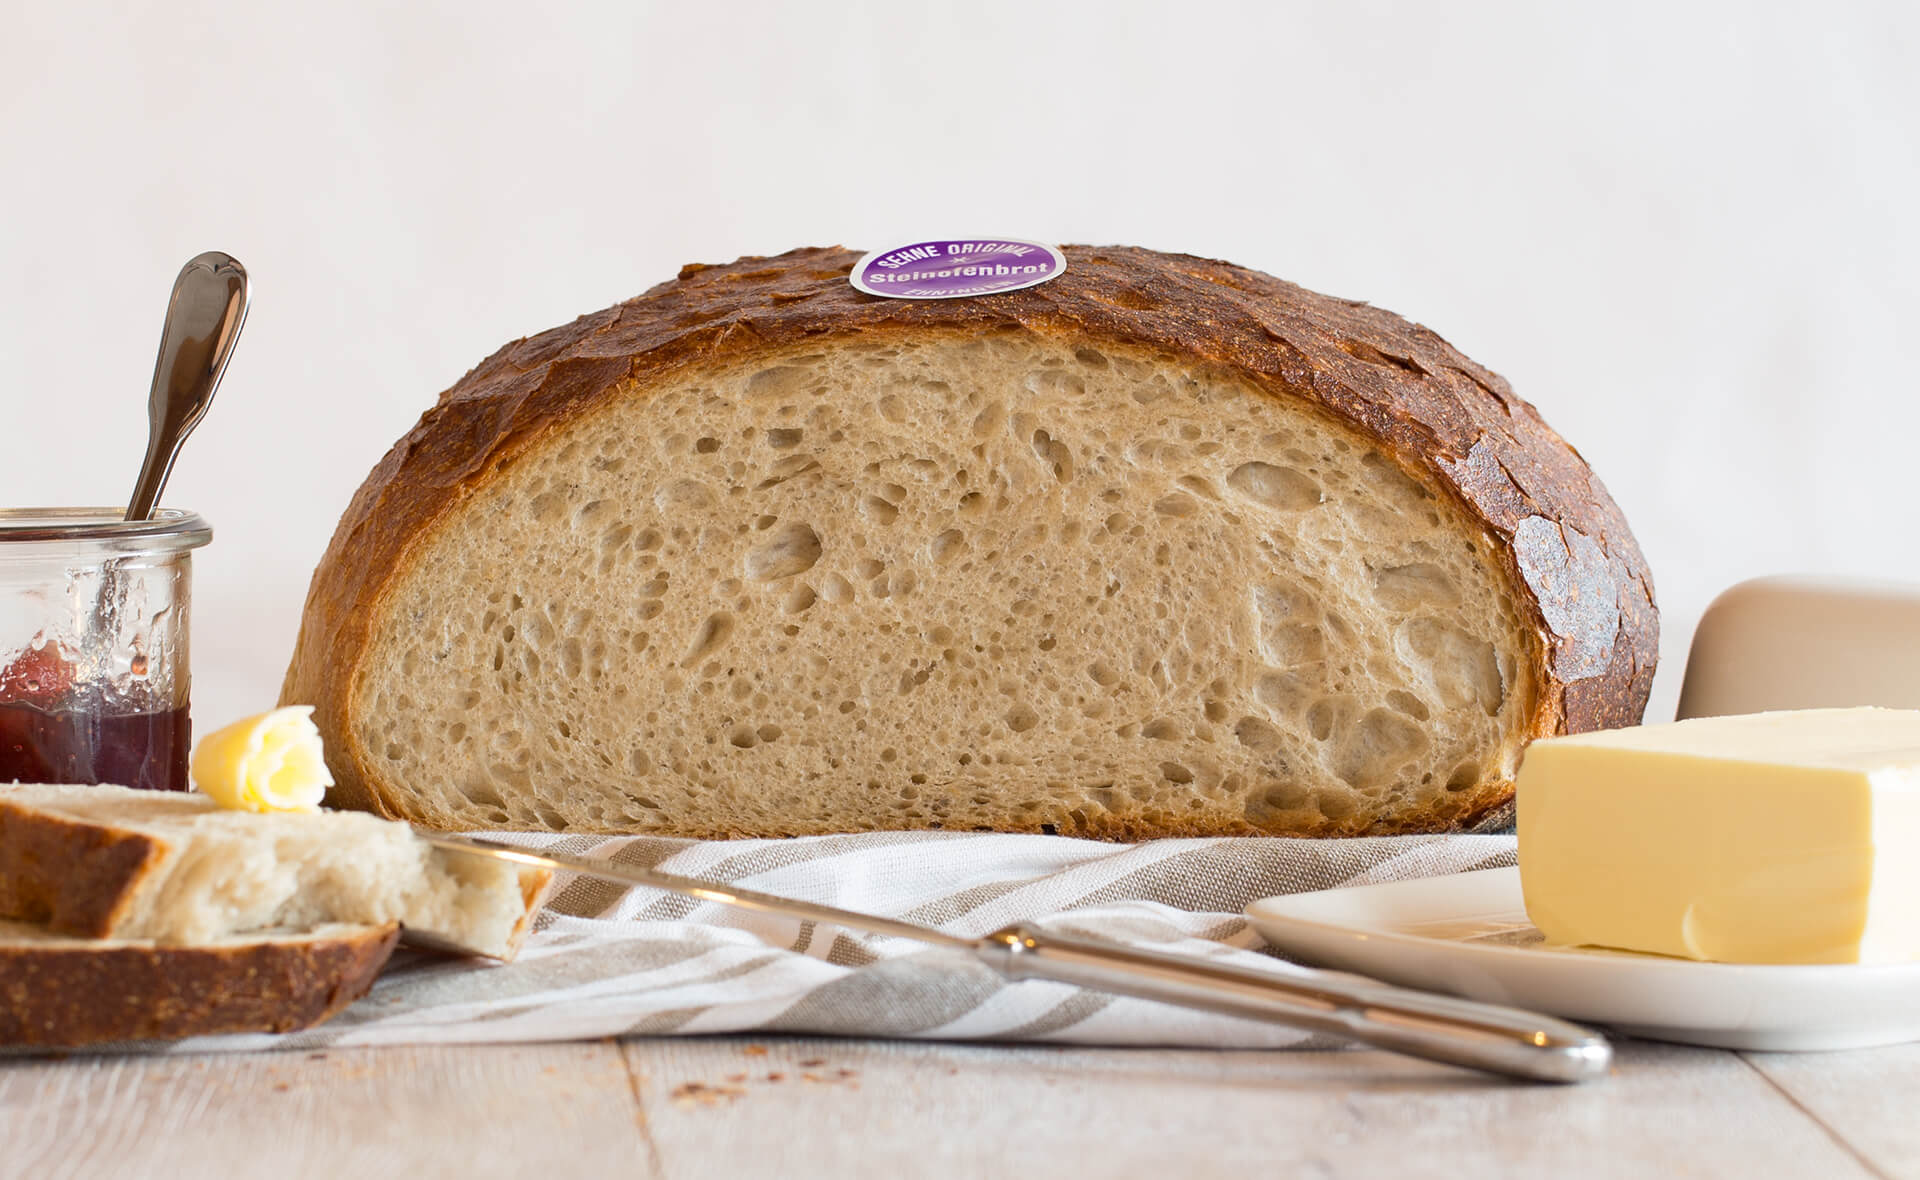 Sehne Headerbild: Stillleben aus angeschnittenem Brot mit Butter und Marmelade